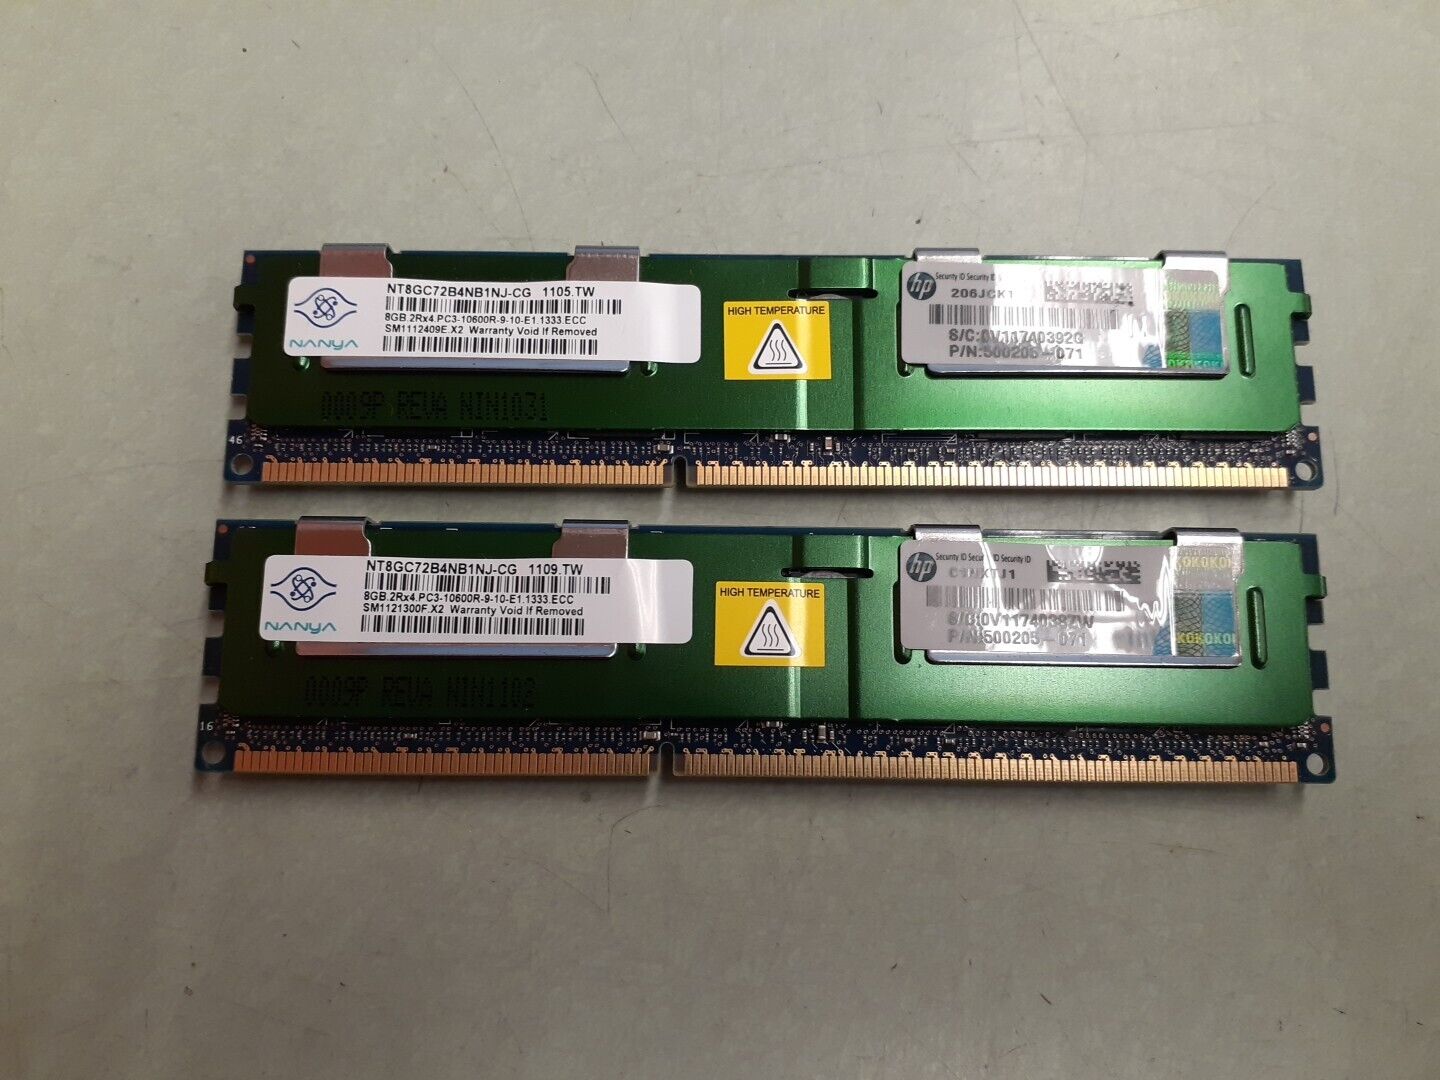 NANYA 16GB (2x8GB) NT8GC72B4NB1NJ-CG 2Rx4 PC3-10600R DDR3 RAM